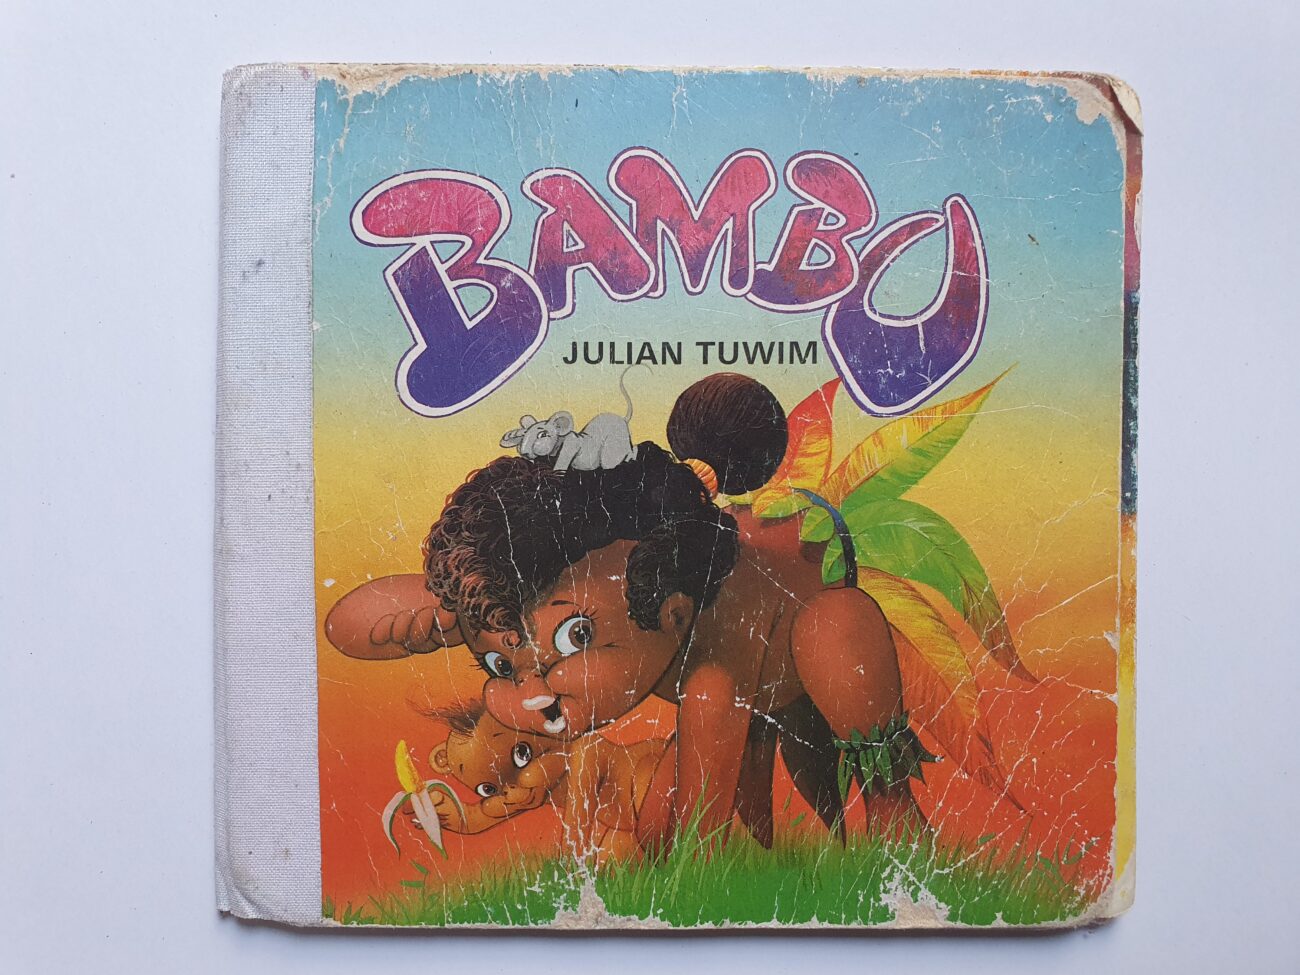 Okładka książeczki "Bambo" Juliana Tuwima